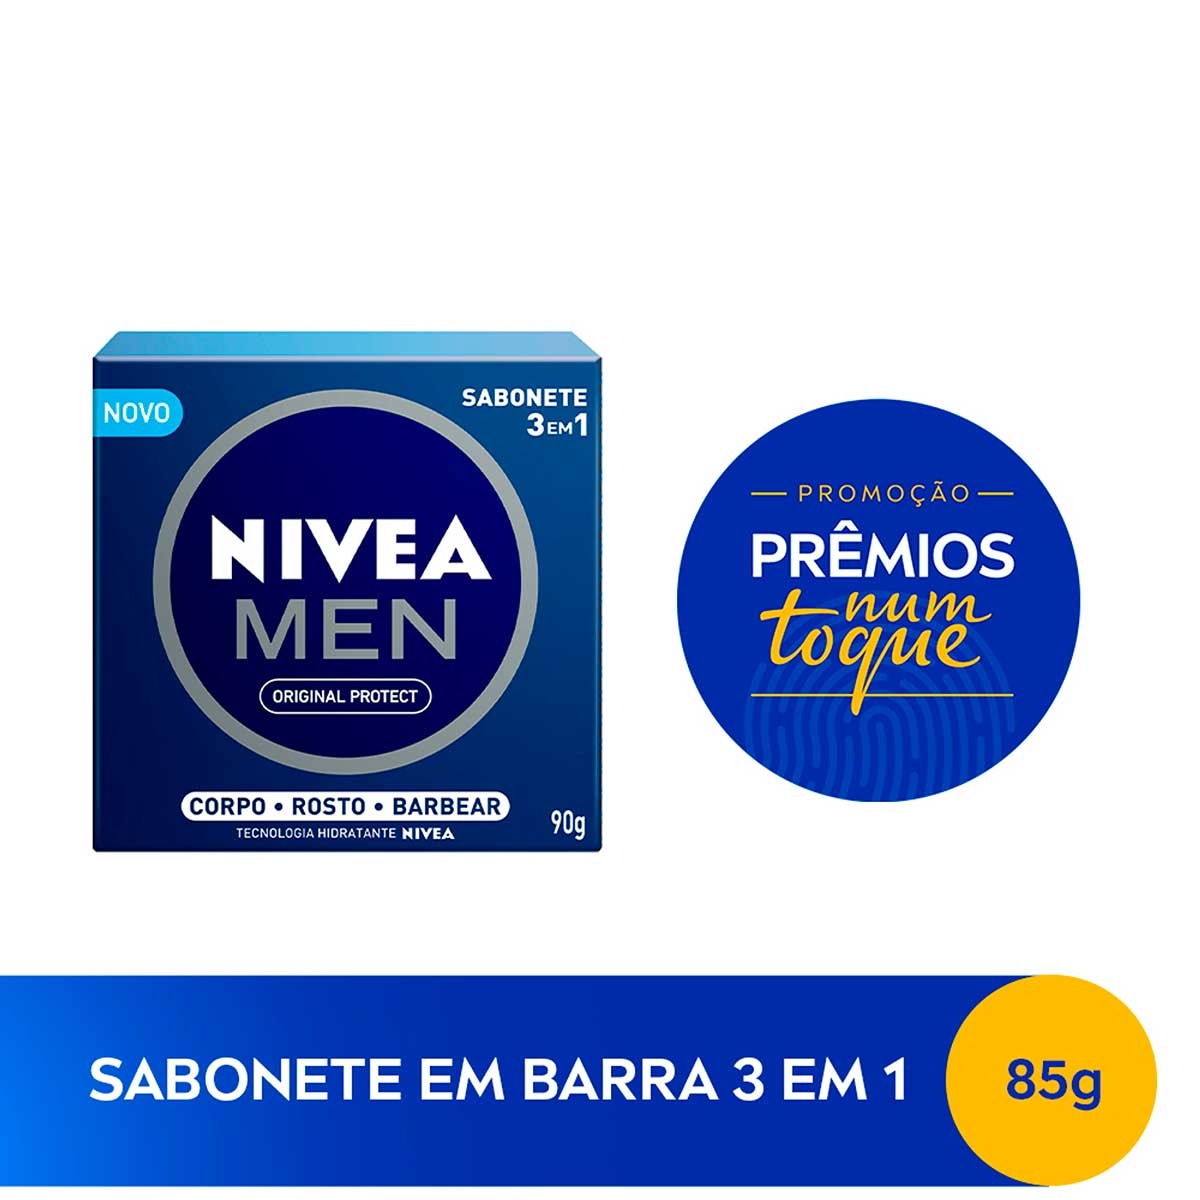 Sabonete em Barra Nivea Men 3 em 1 Original Protect 90g 90g